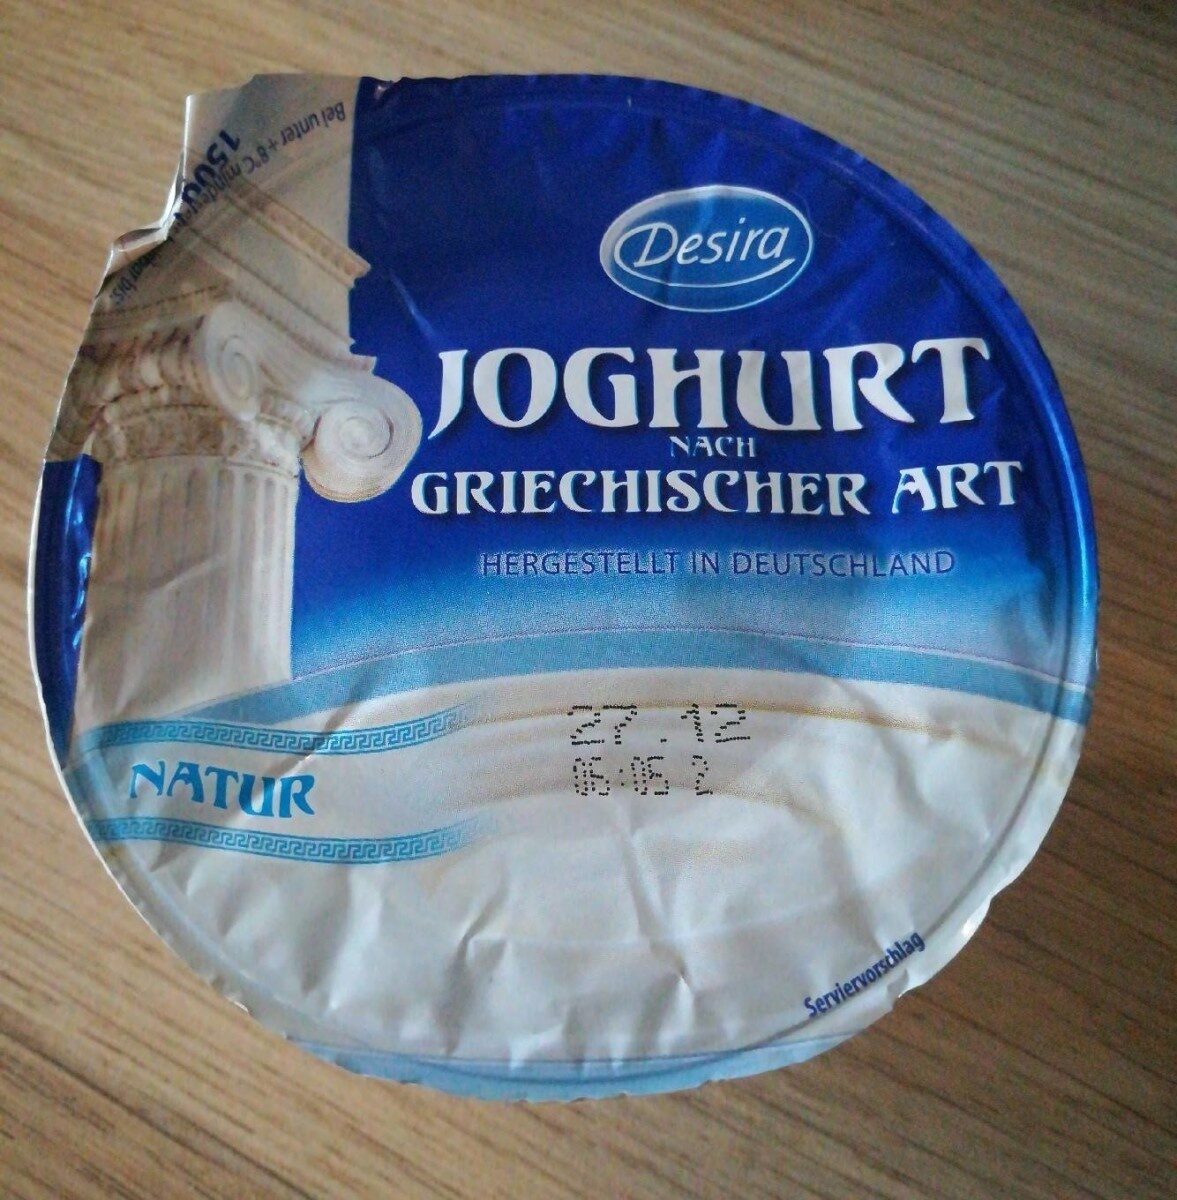 Joghurt grec - Produkt - fr